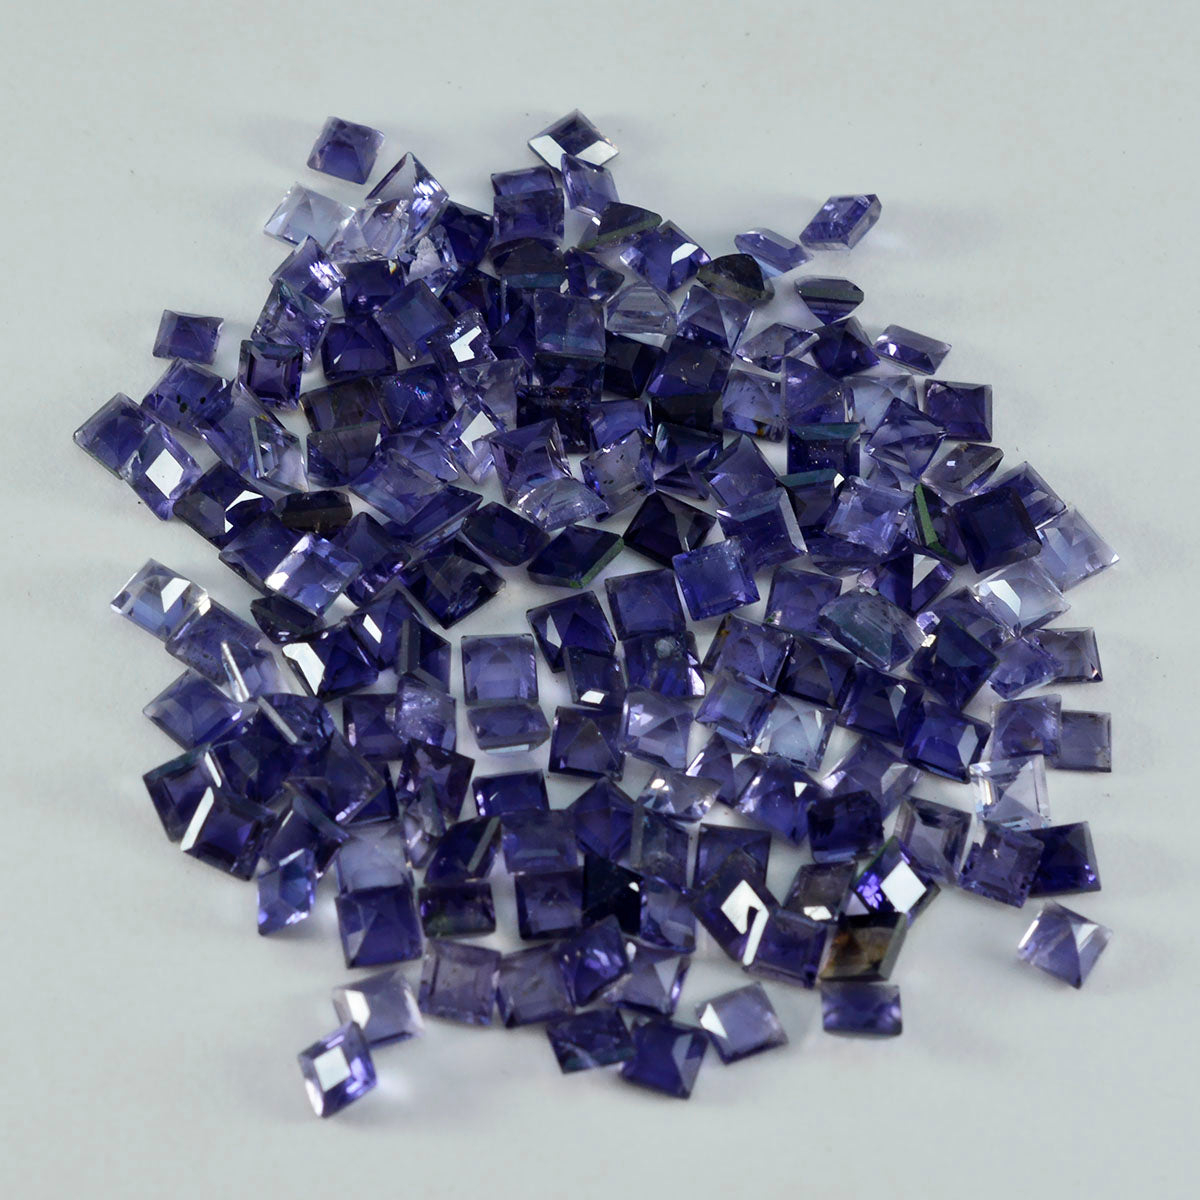 riyogems 1шт синий иолит ограненный 4x4 мм квадратной формы качественный драгоценный камень